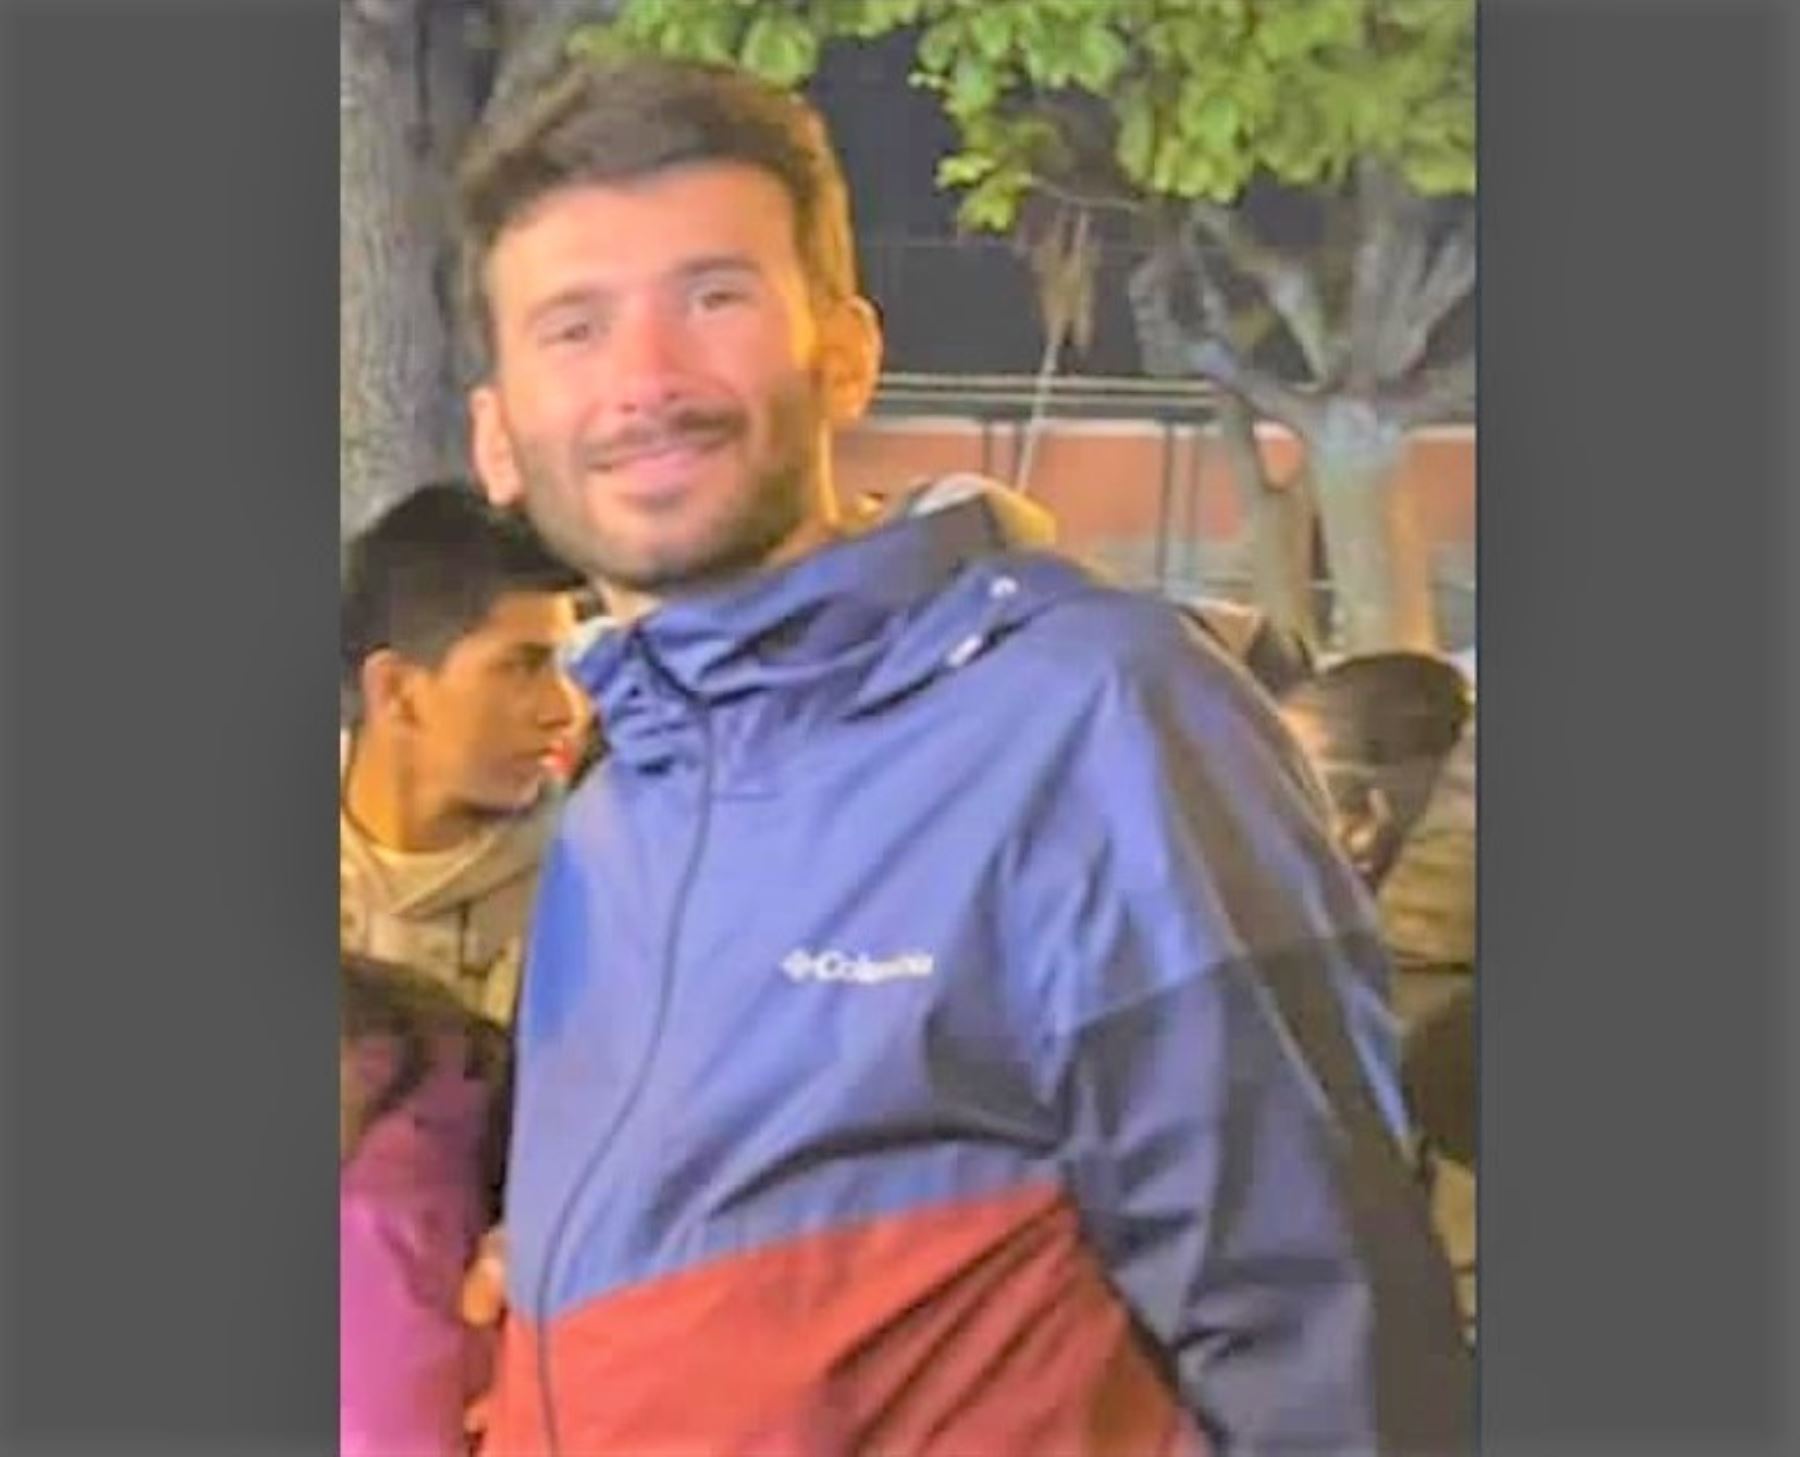 El turista italiano Alberto Fedele se encuentra desaparecido desde el lunes 4 de julio cuando se dirigía a la laguna Juchuycocha, en la comunidad de San Isidro Chicón, provincia de Urubamba, en Cusco.